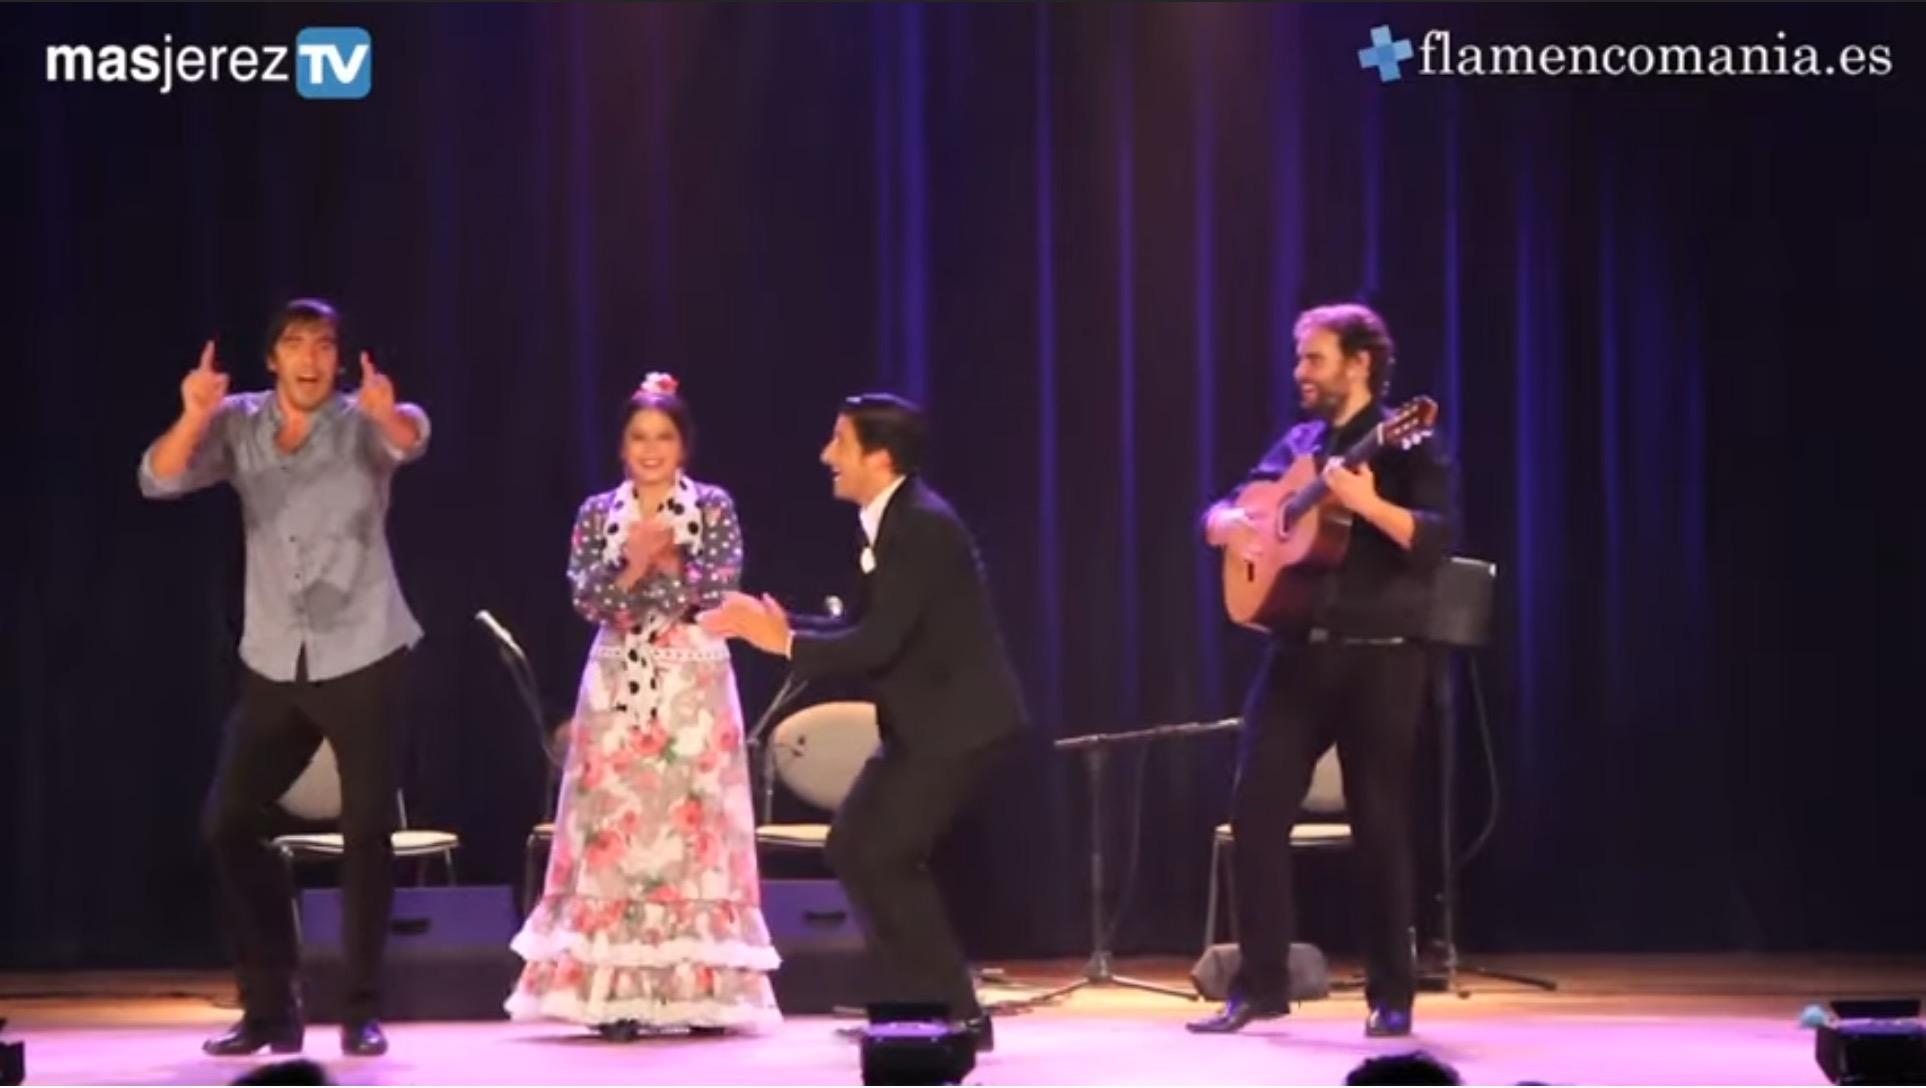 Flamencomanía TV: YoMeQuedoEnCasa - Día 4 - Las damas del baile flamenco